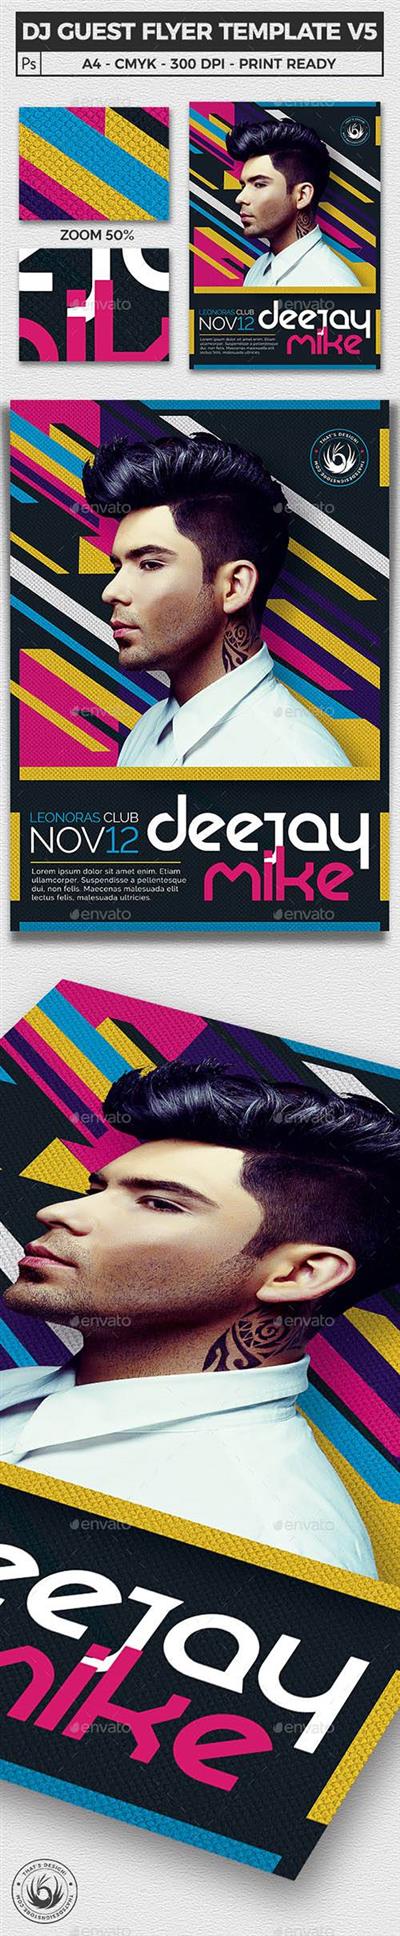 GR - DJ Guest Flyer Poster Template V5 11254985